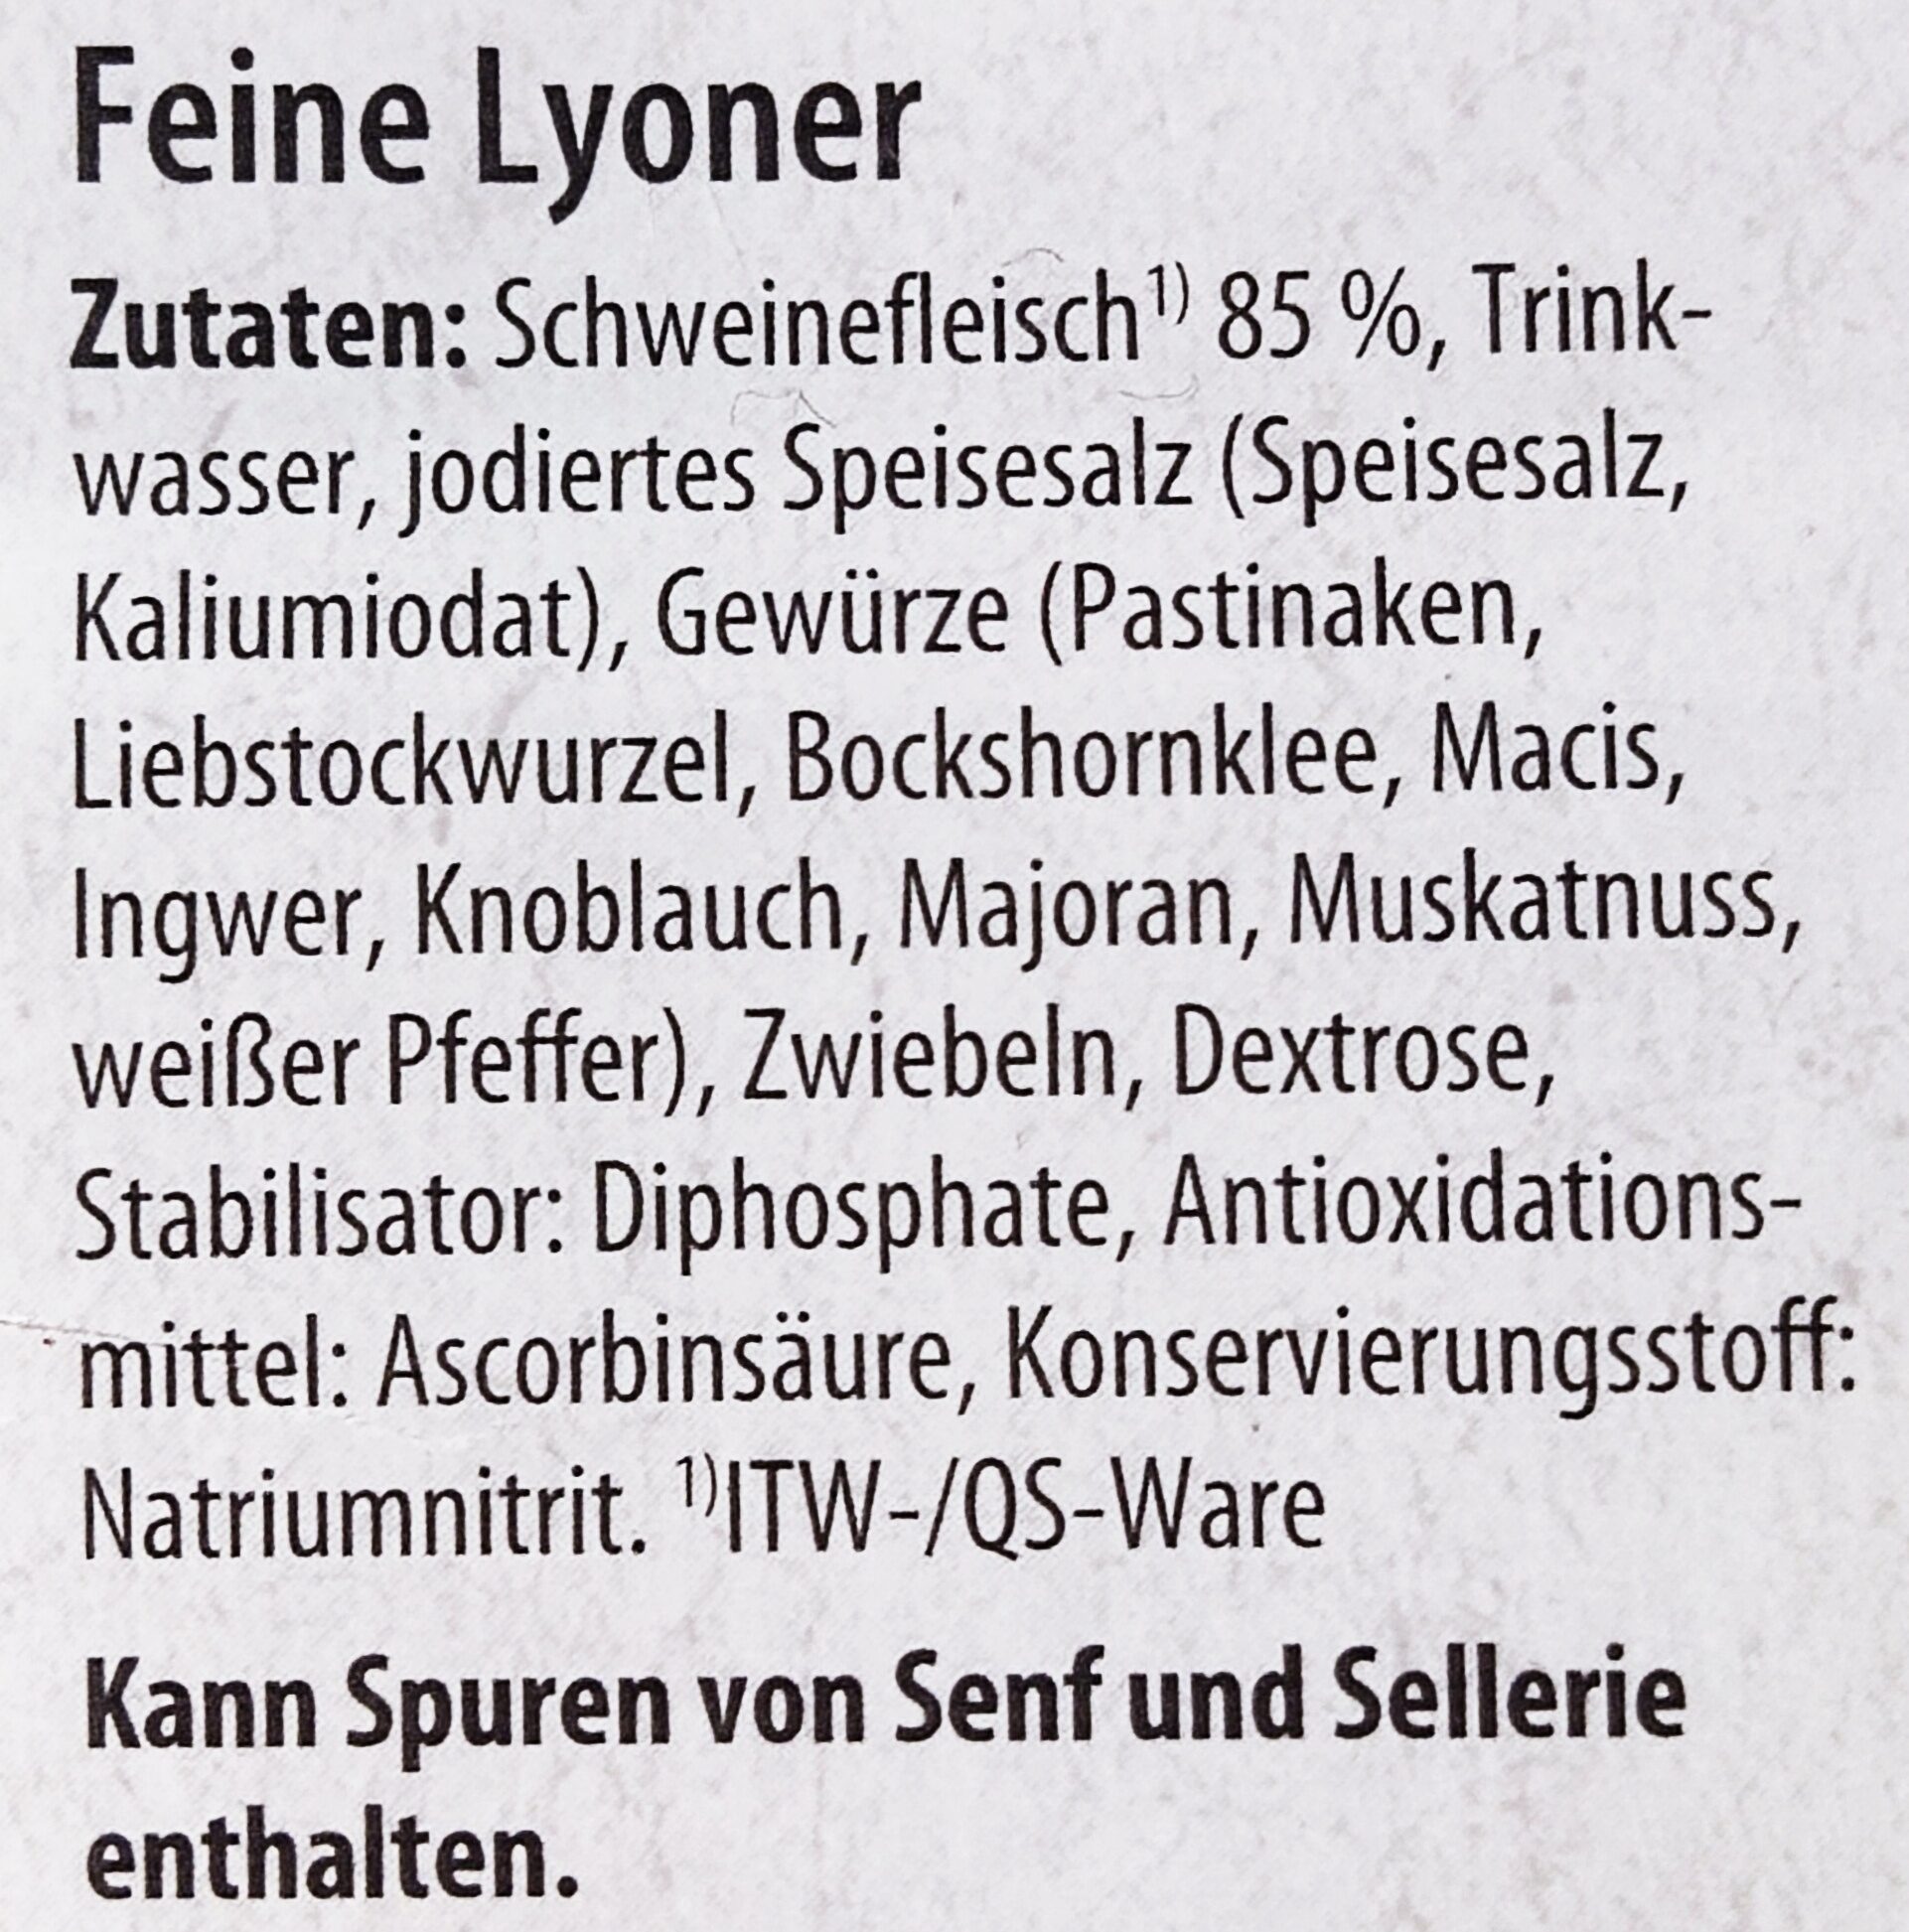 Feine Lyoner - Zutaten